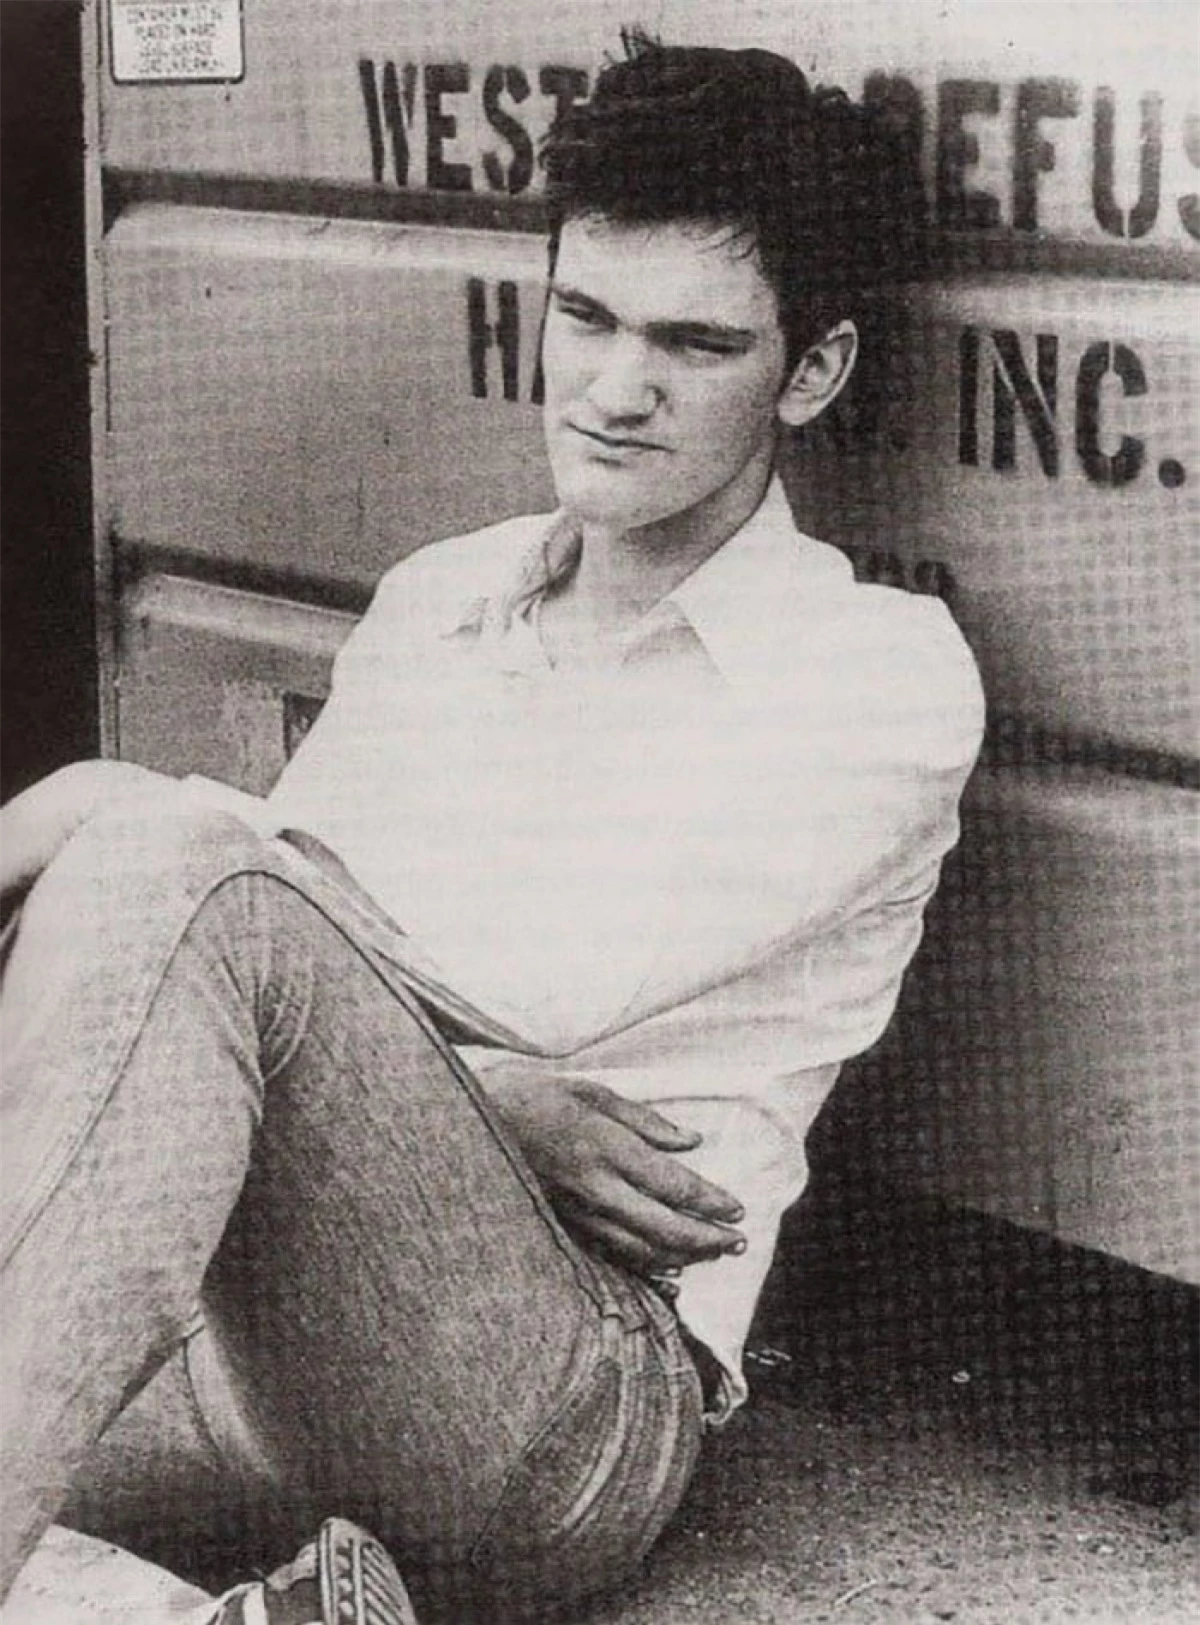 Quentin Tarantino thể hiện đam mê với phim ảnh của mình từ khi còn đang đi học. Năm 15 tuổi, ông bắt đầu làm việc trong một rạp phim. Những năm 1980, ông làm việc cho một cửa hàng video trong 5 năm. Bằng cách xem phim ở cửa hàng đó, Tarantino đã học được rất nhiều điều về cách làm phim và sau đó, ông được trả tiền để xem phim. Công việc đầu tiên ông nhận được tại Hollywood là vào năm 1986 với tư cách là trợ lý sản xuất. Năm 1992, ông viết kịch bản và đạo diễn bộ phim “Reservoir Dogs”, bộ phim đã giúp ông trở thành đạo diễn nổi tiếng.